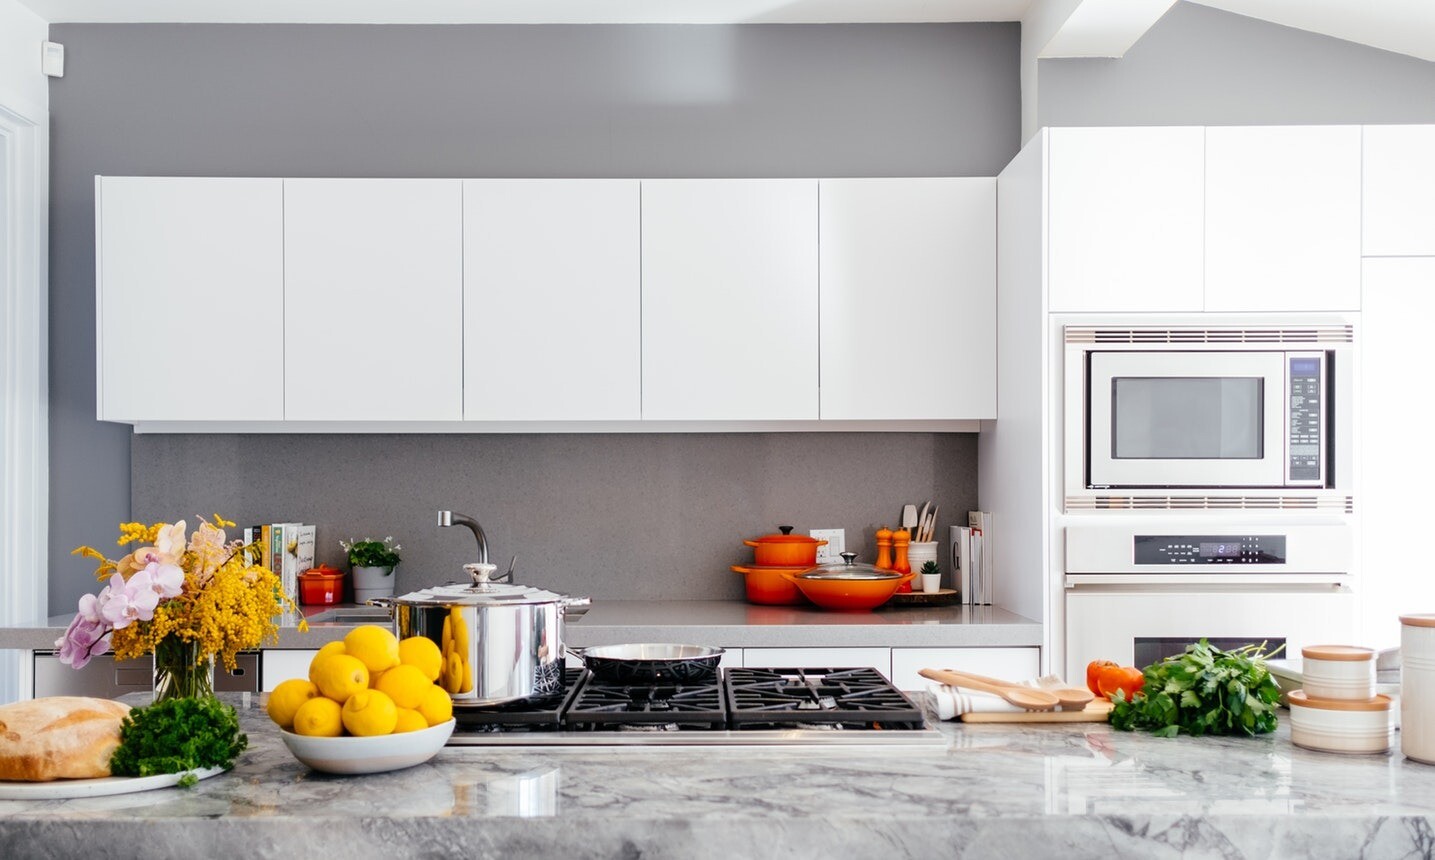 Белые кухни: фото, самые красивые белые кухни в интерьере, идеи дизайна